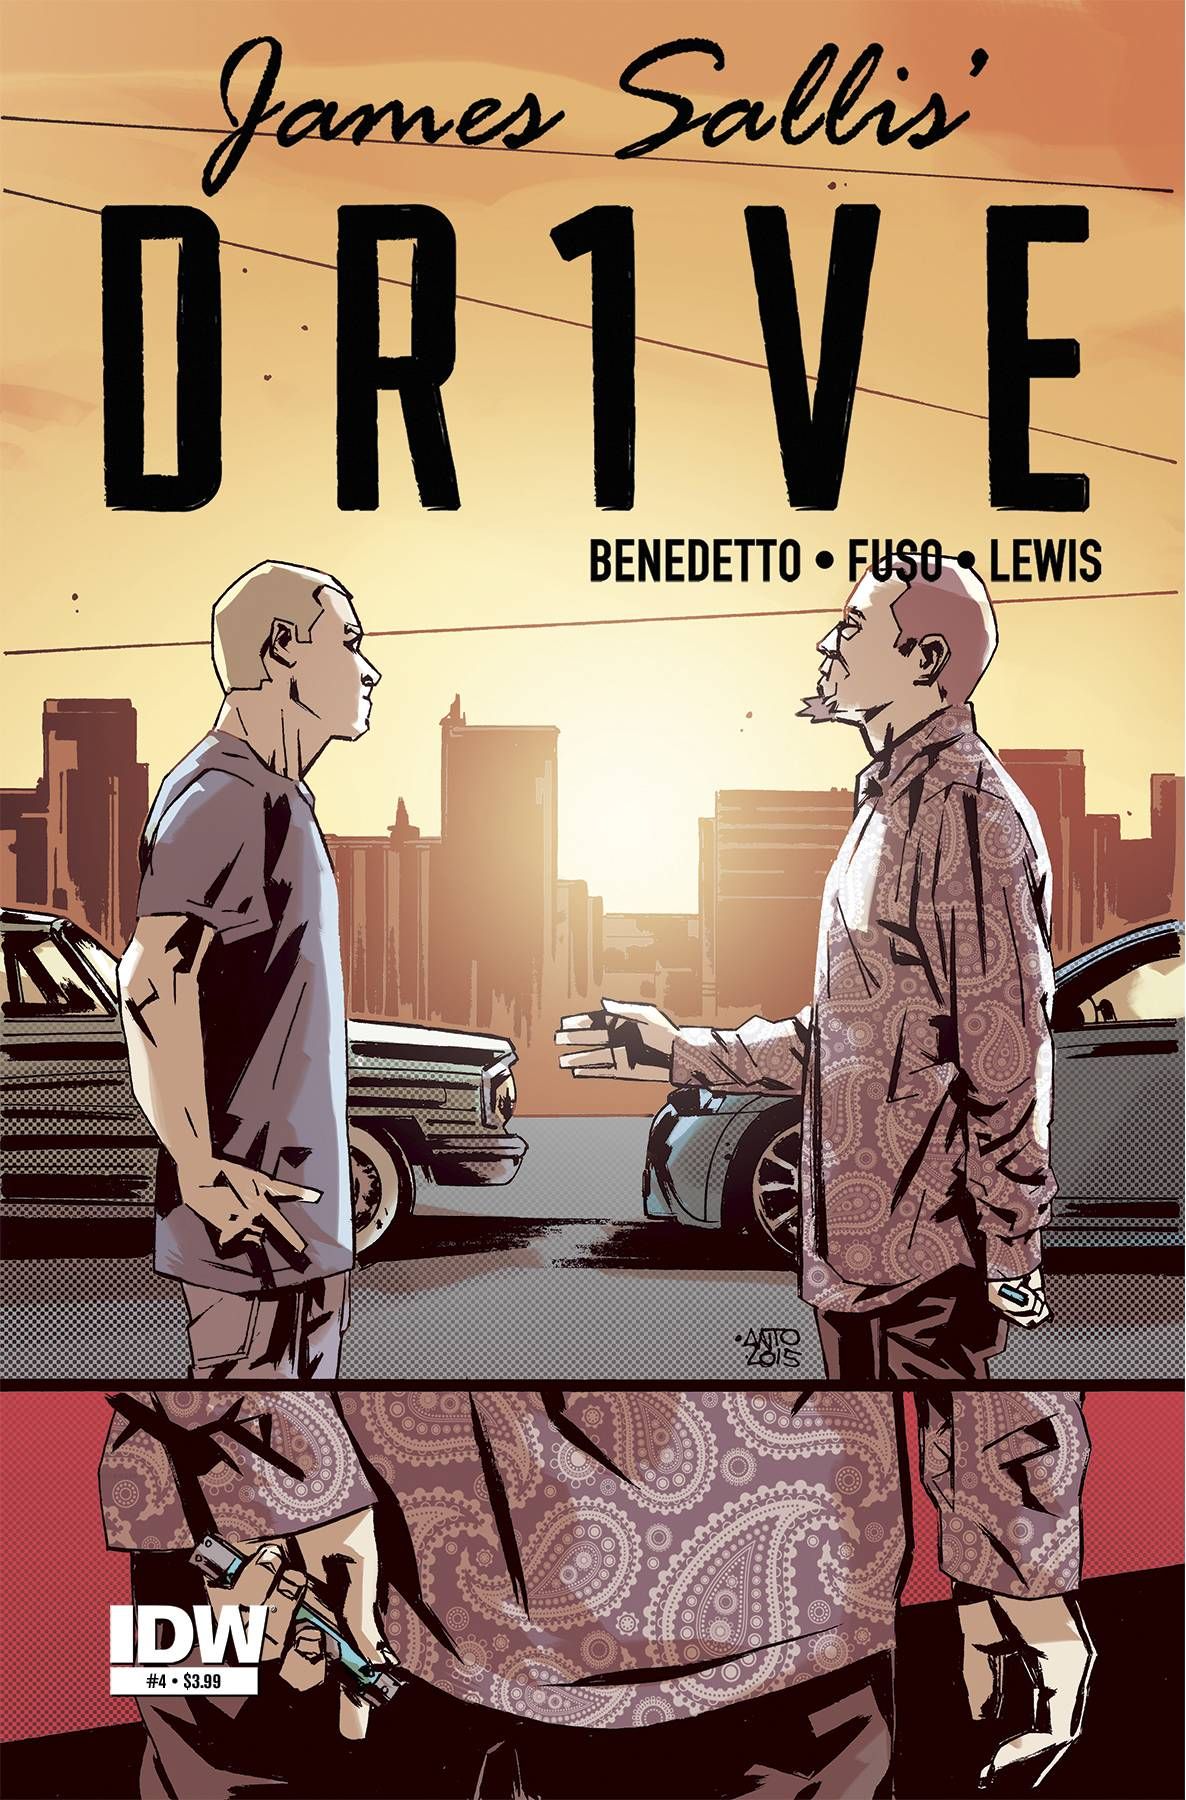 Drive #4 Comic